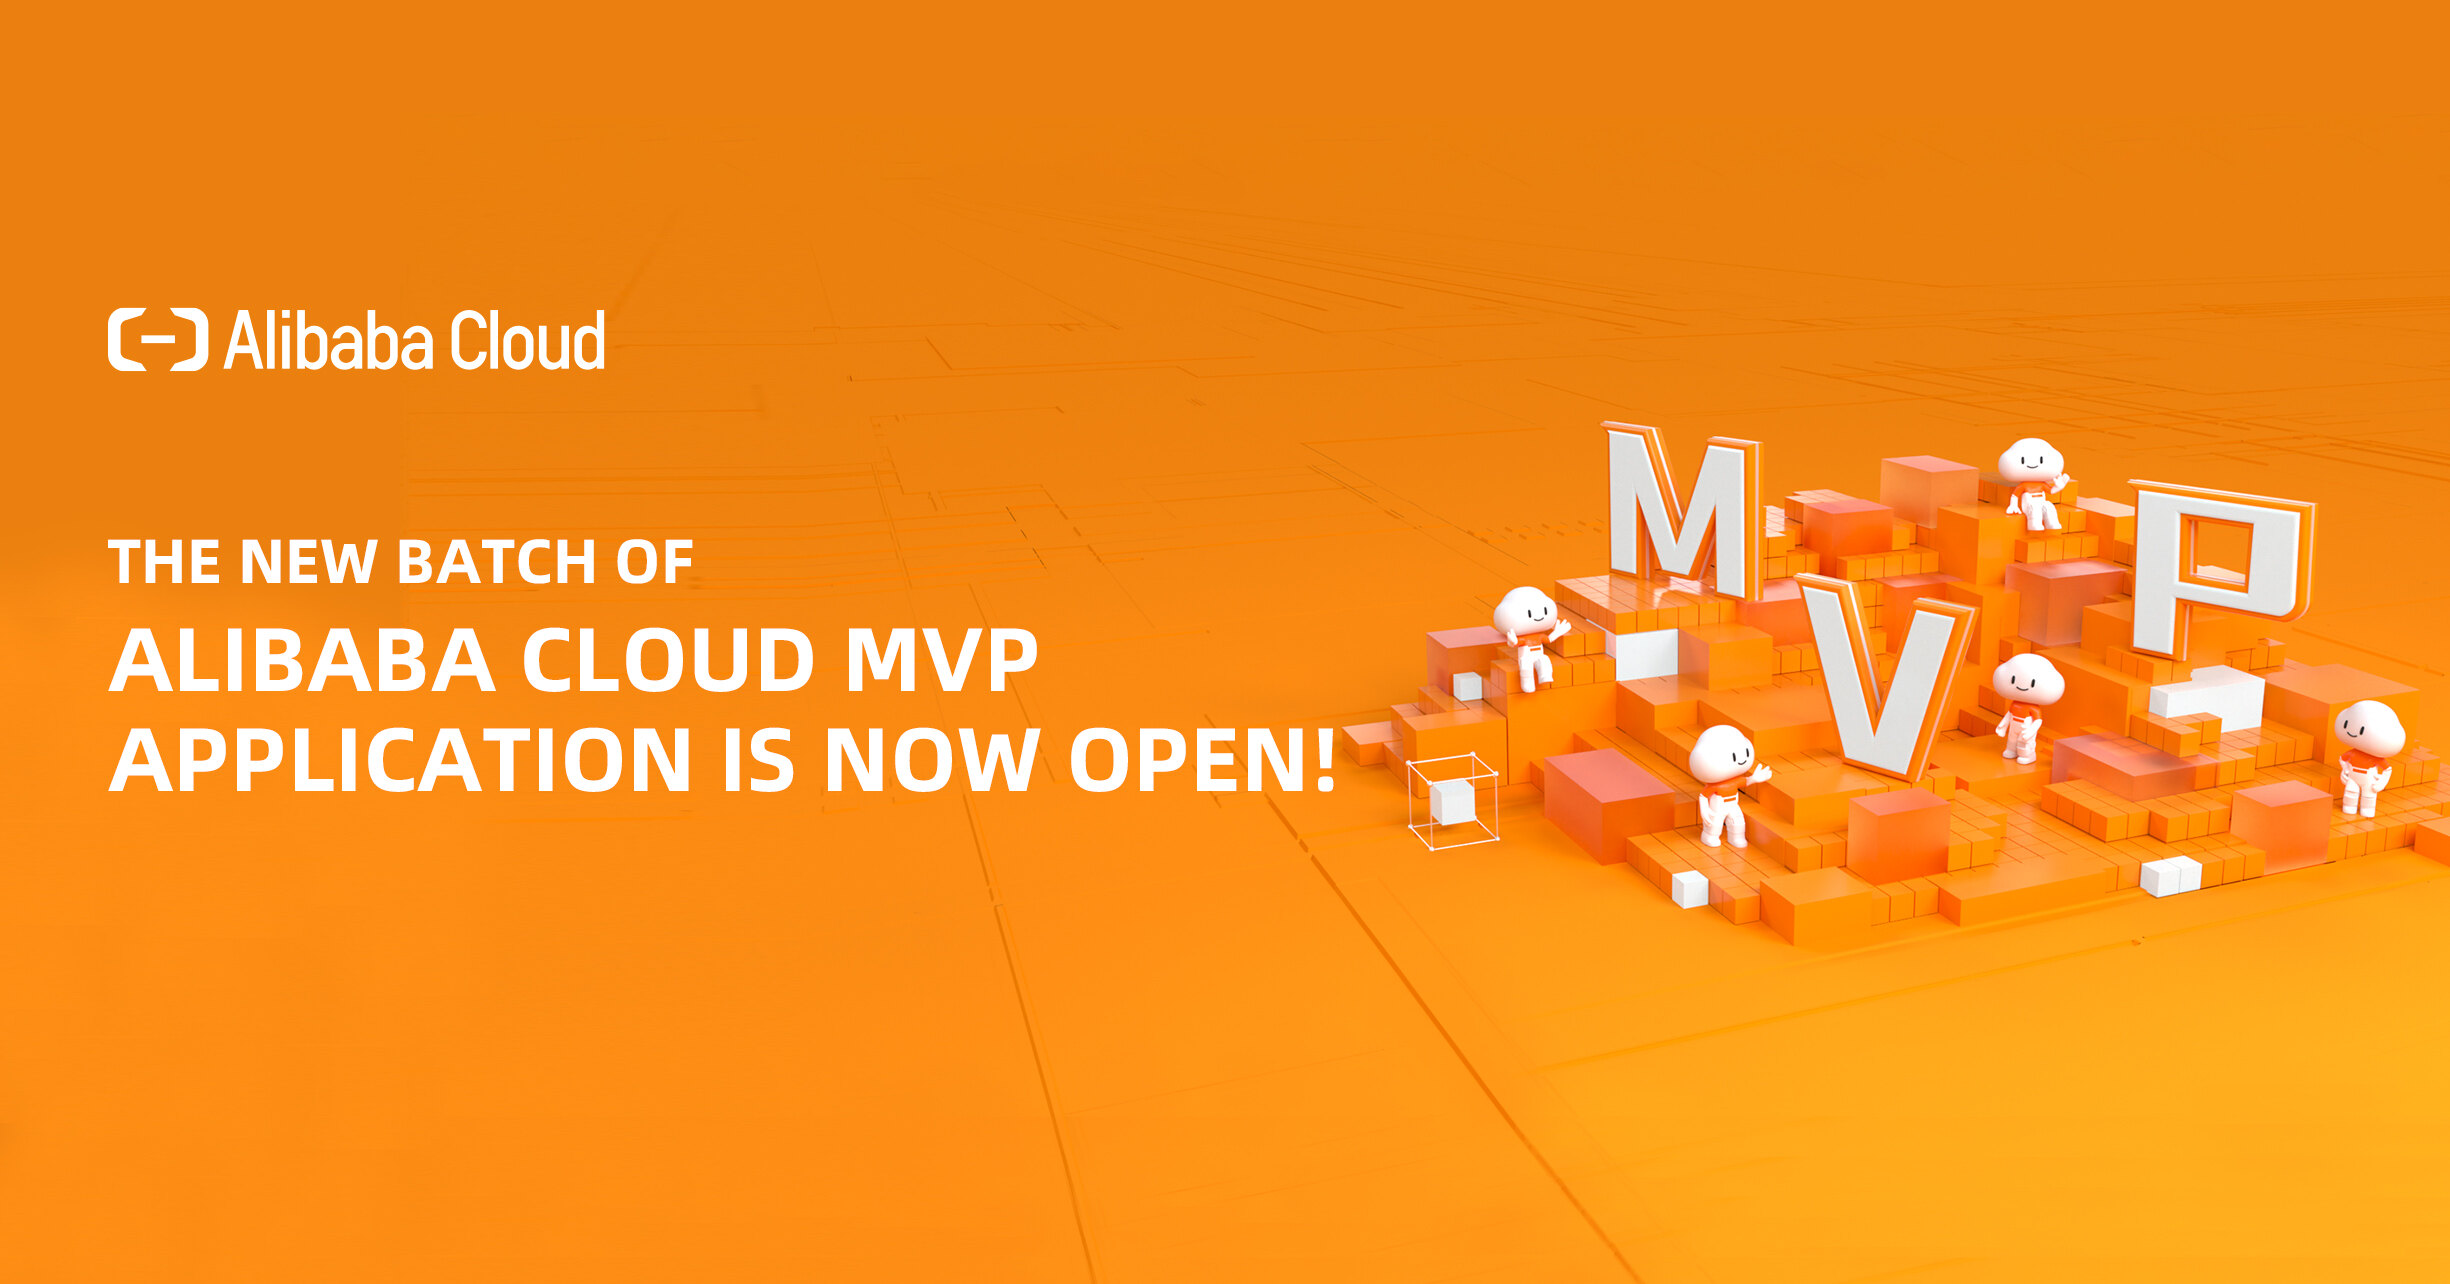 ¡Conviértete en el próximo MVP de Alibaba Cloud!